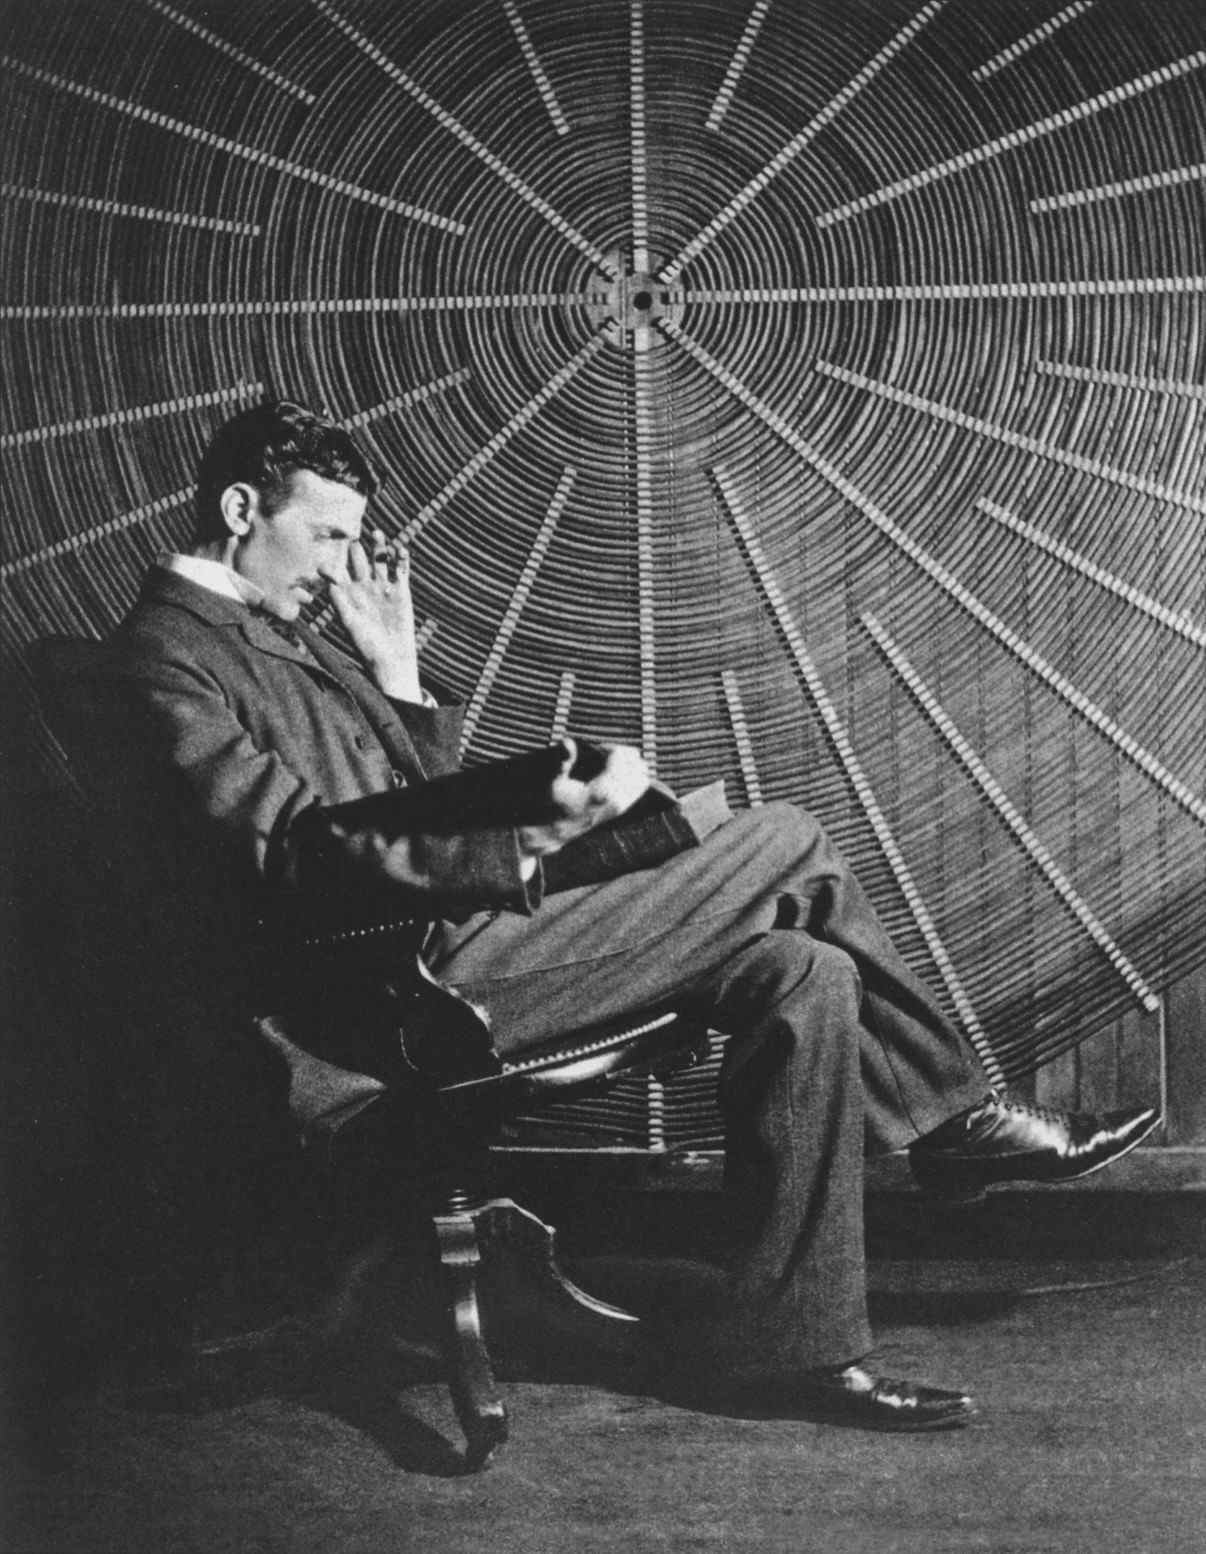 Тесла өзінің Шығыс Хьюстондағы зертханасында сымсыз қуат тәжірибелерінде пайдаланылған спиральды катушканың алдында отыр.